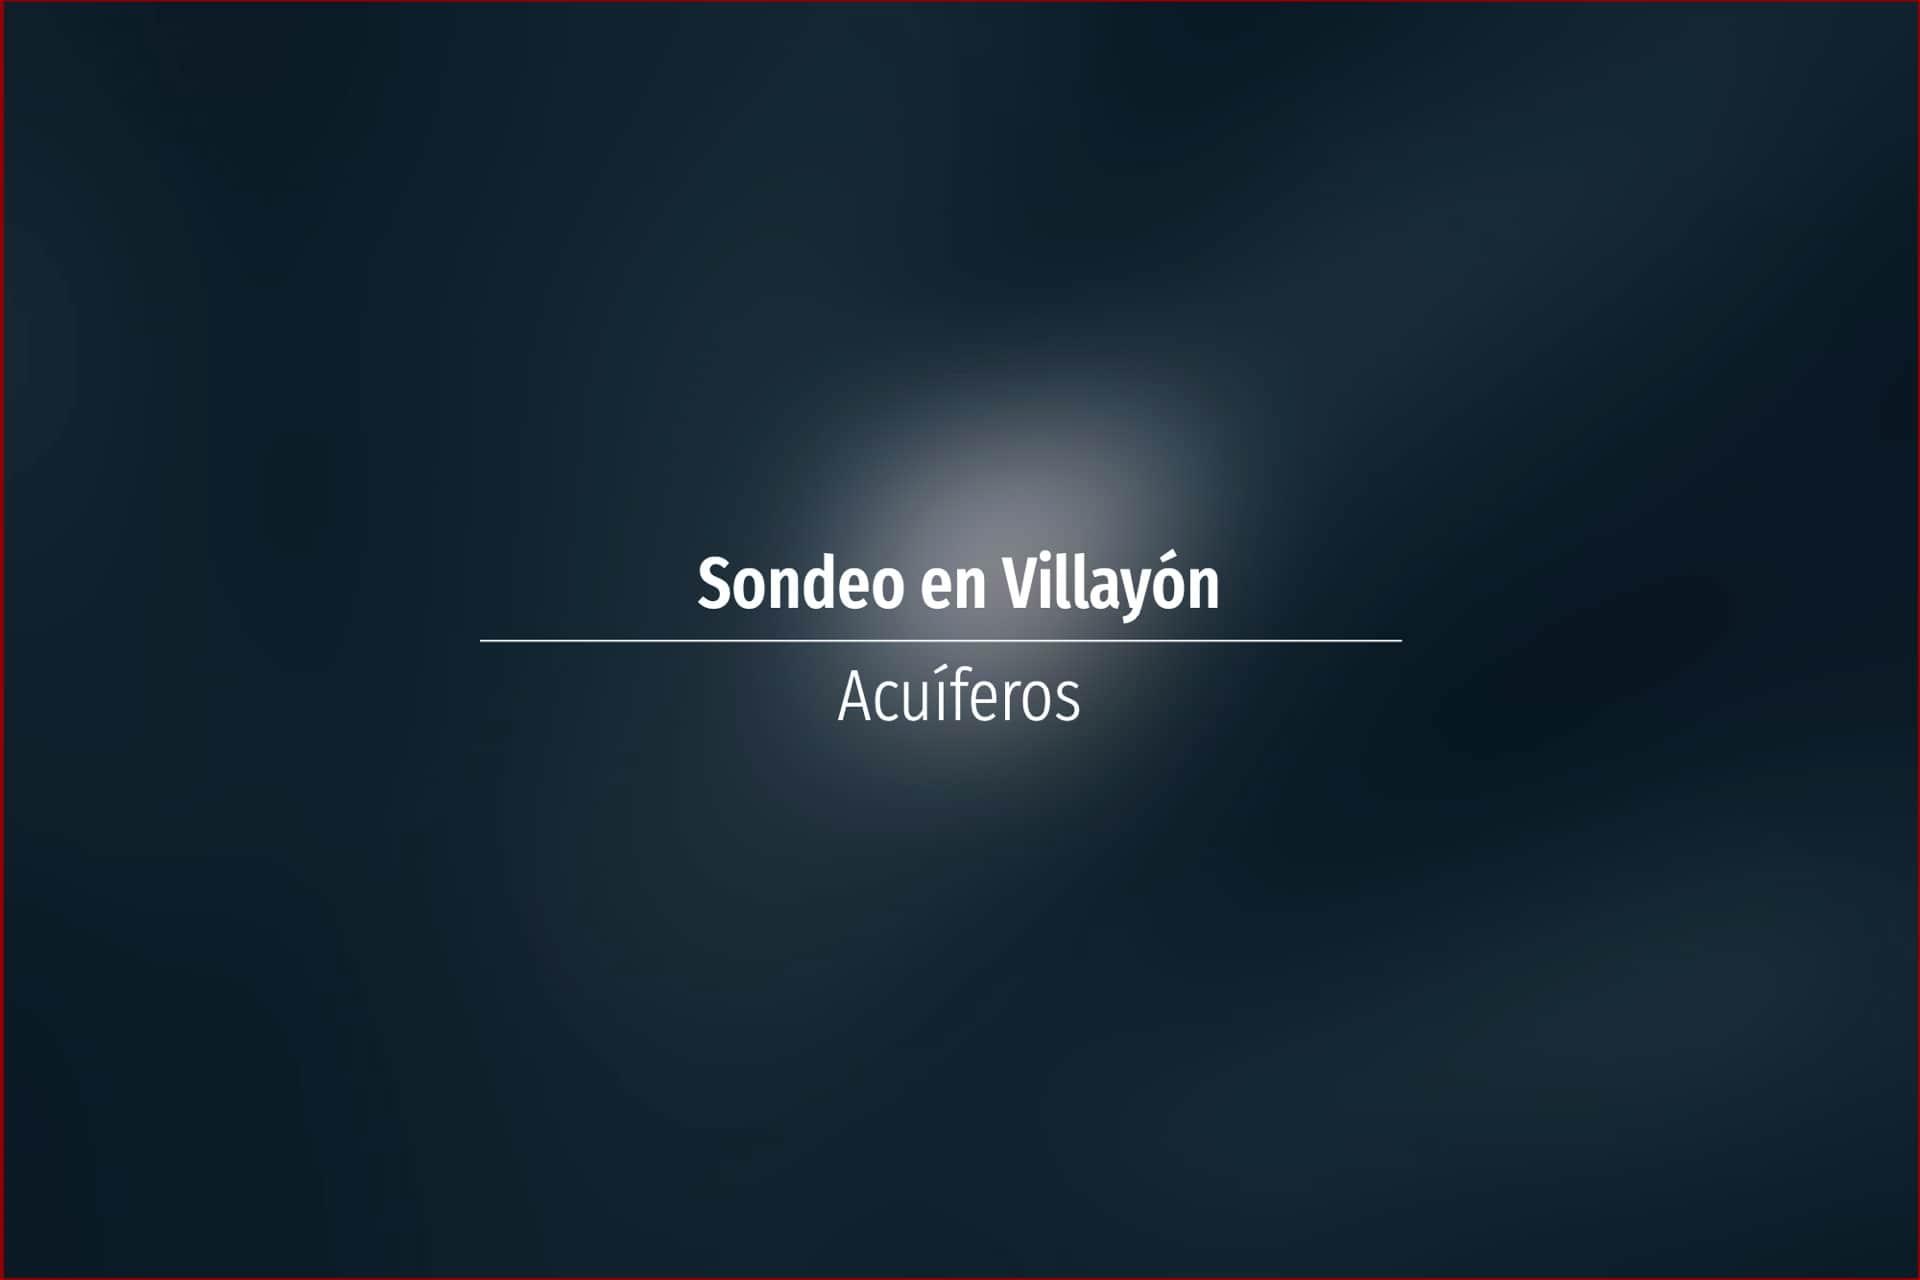 Sondeo en Villayón